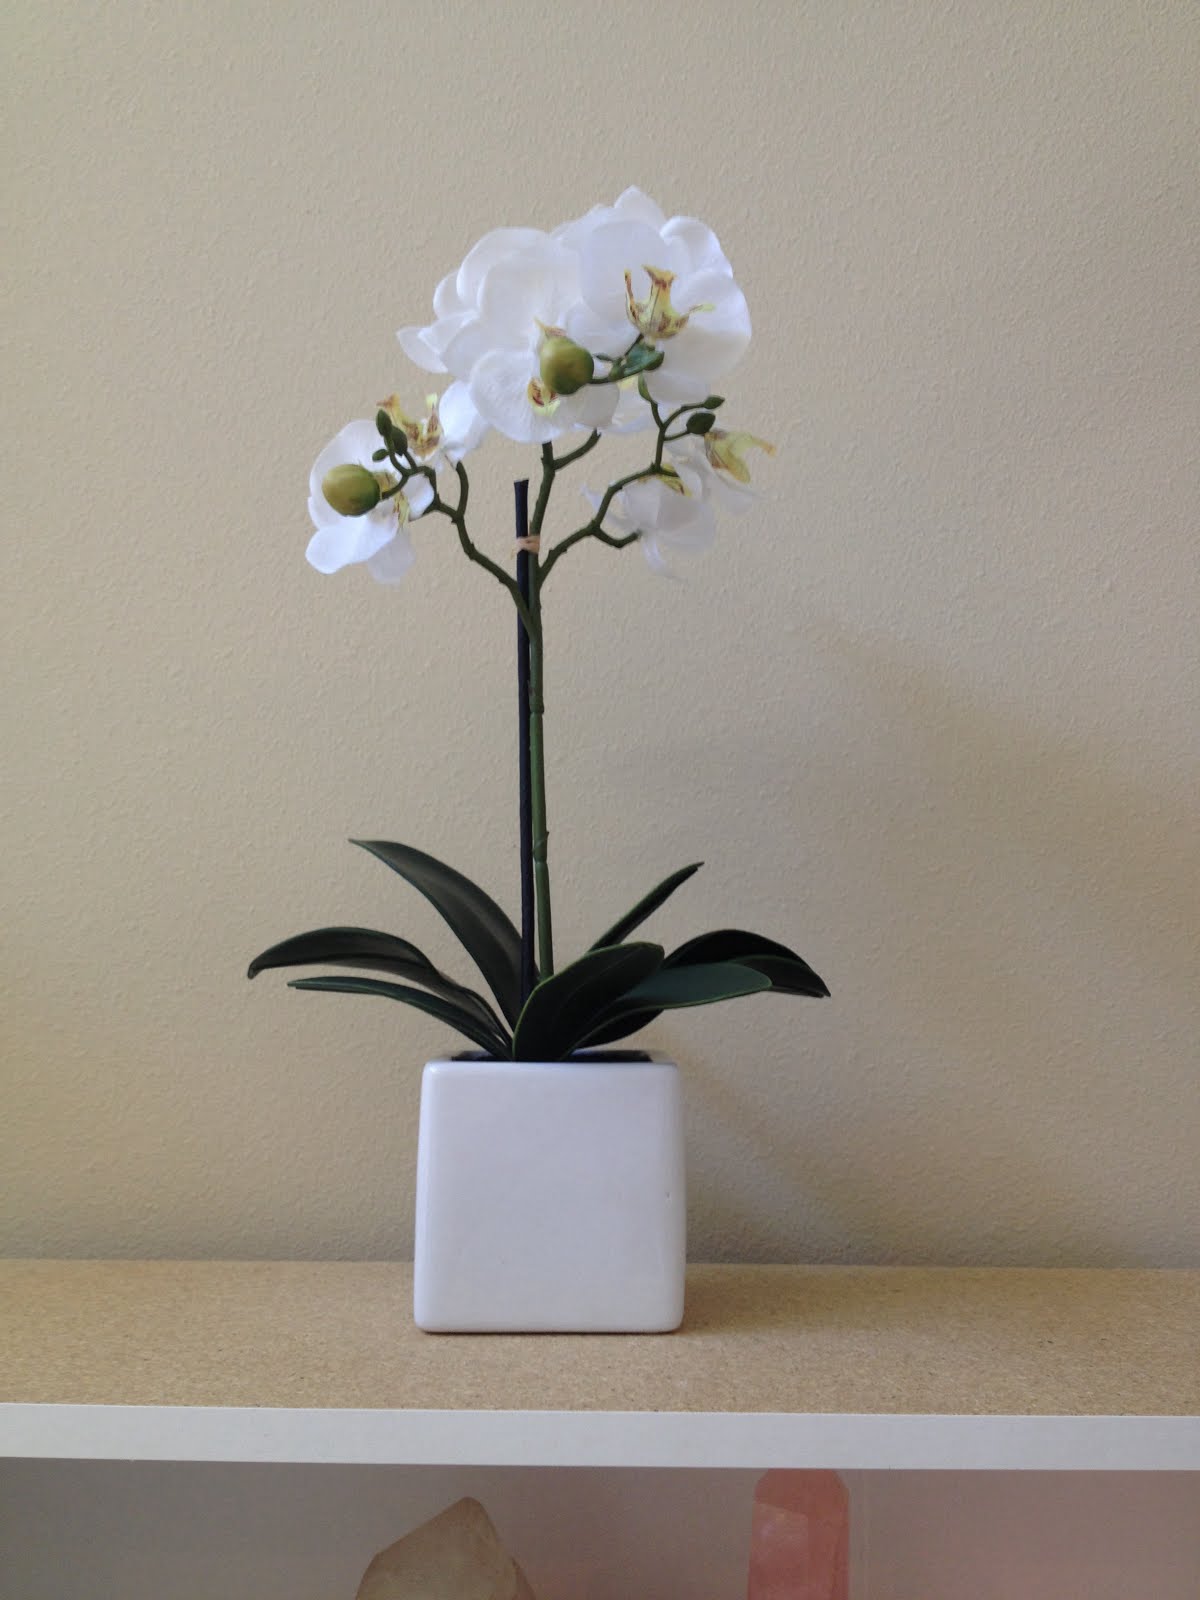 I ADORE white orchids: